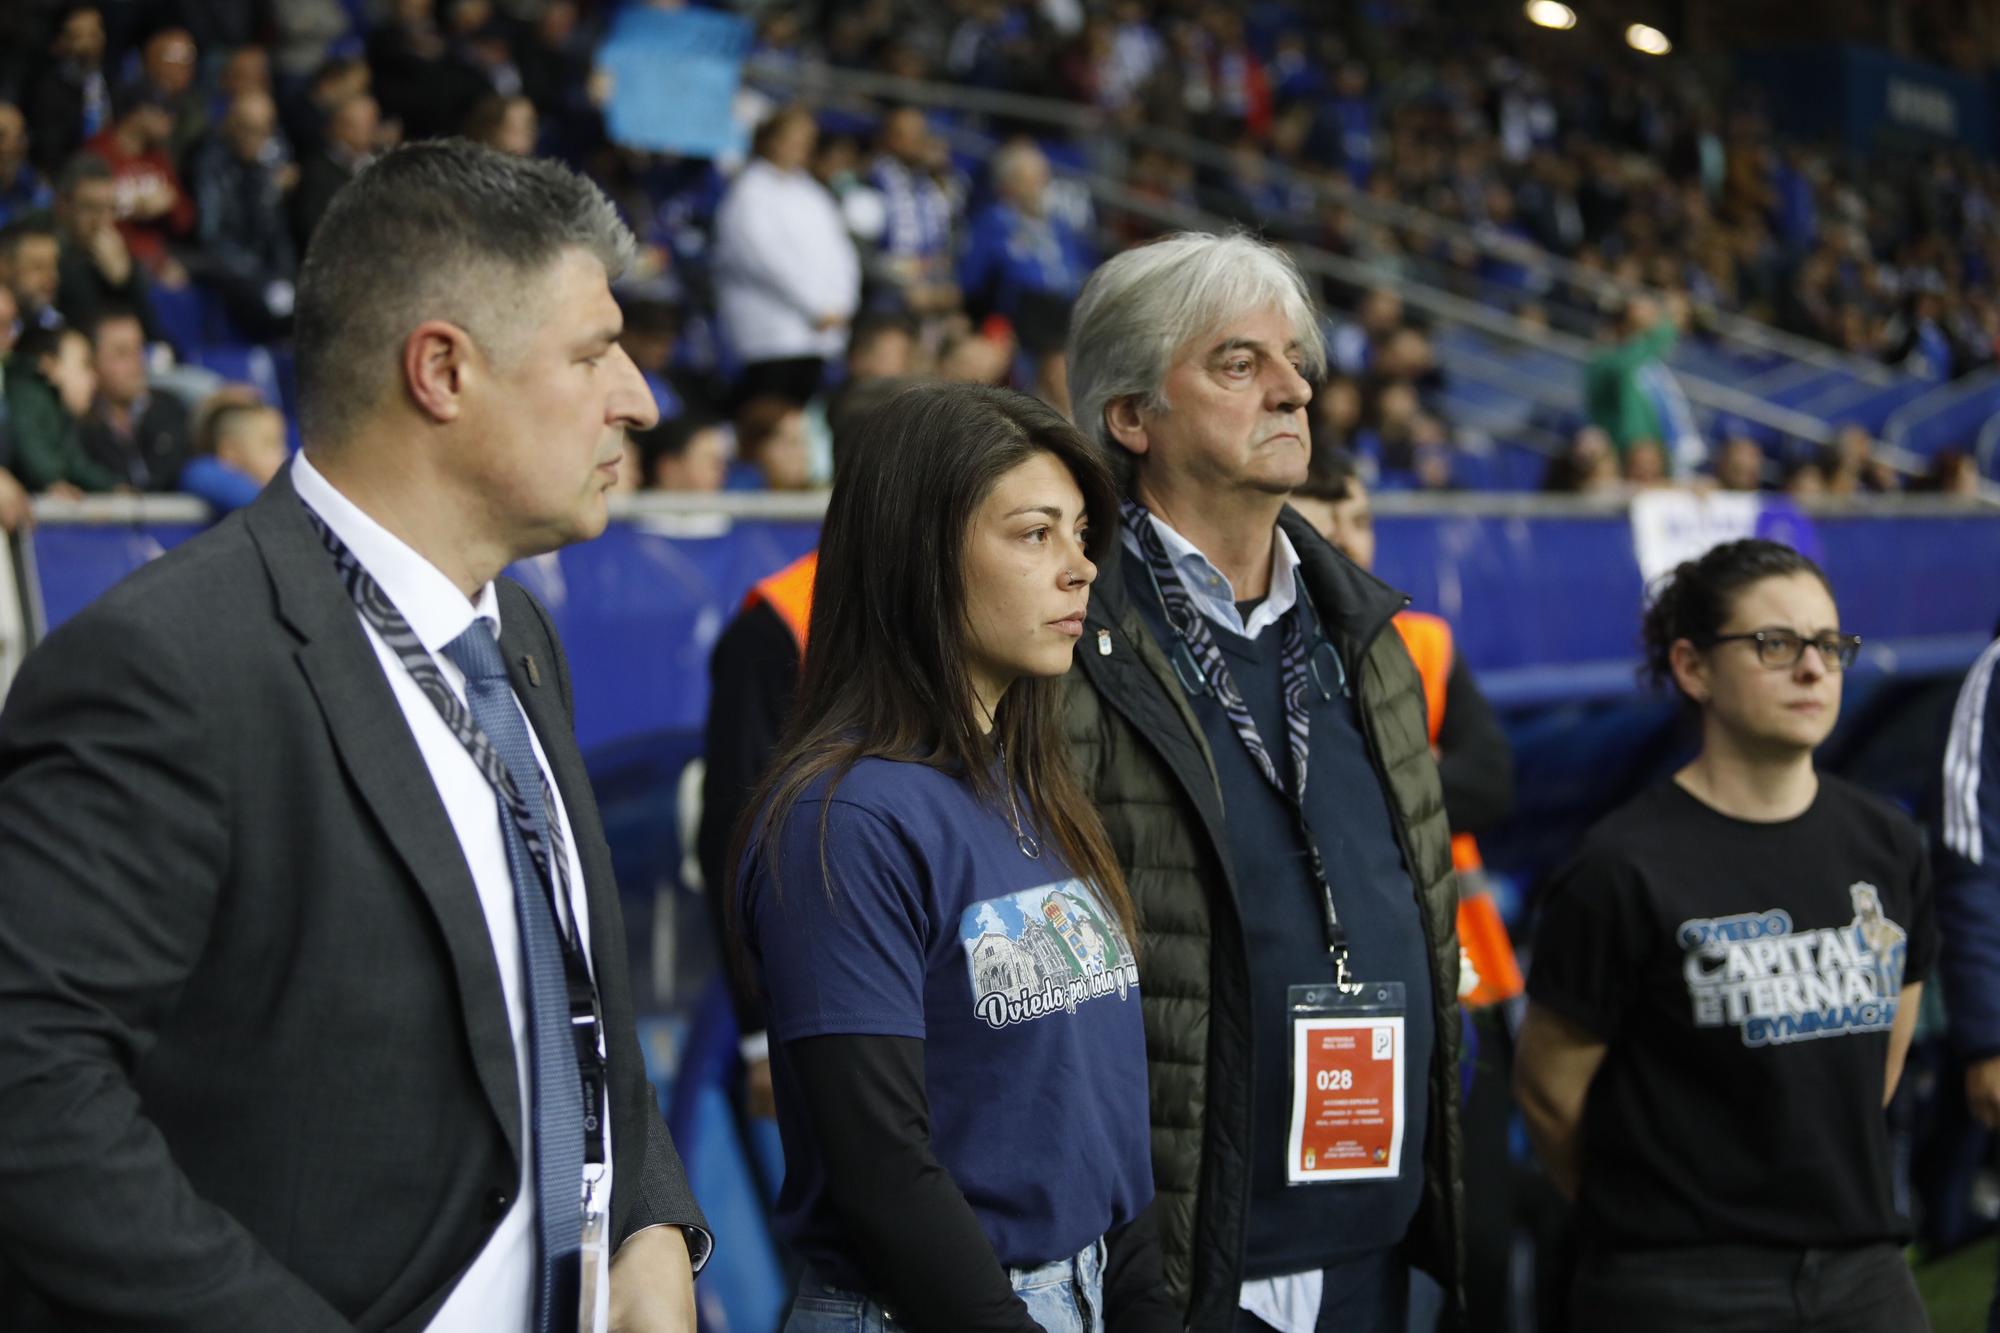 EN IMÁGENES: Así fue el encuentro entre el Real Oviedo y el Tenerife